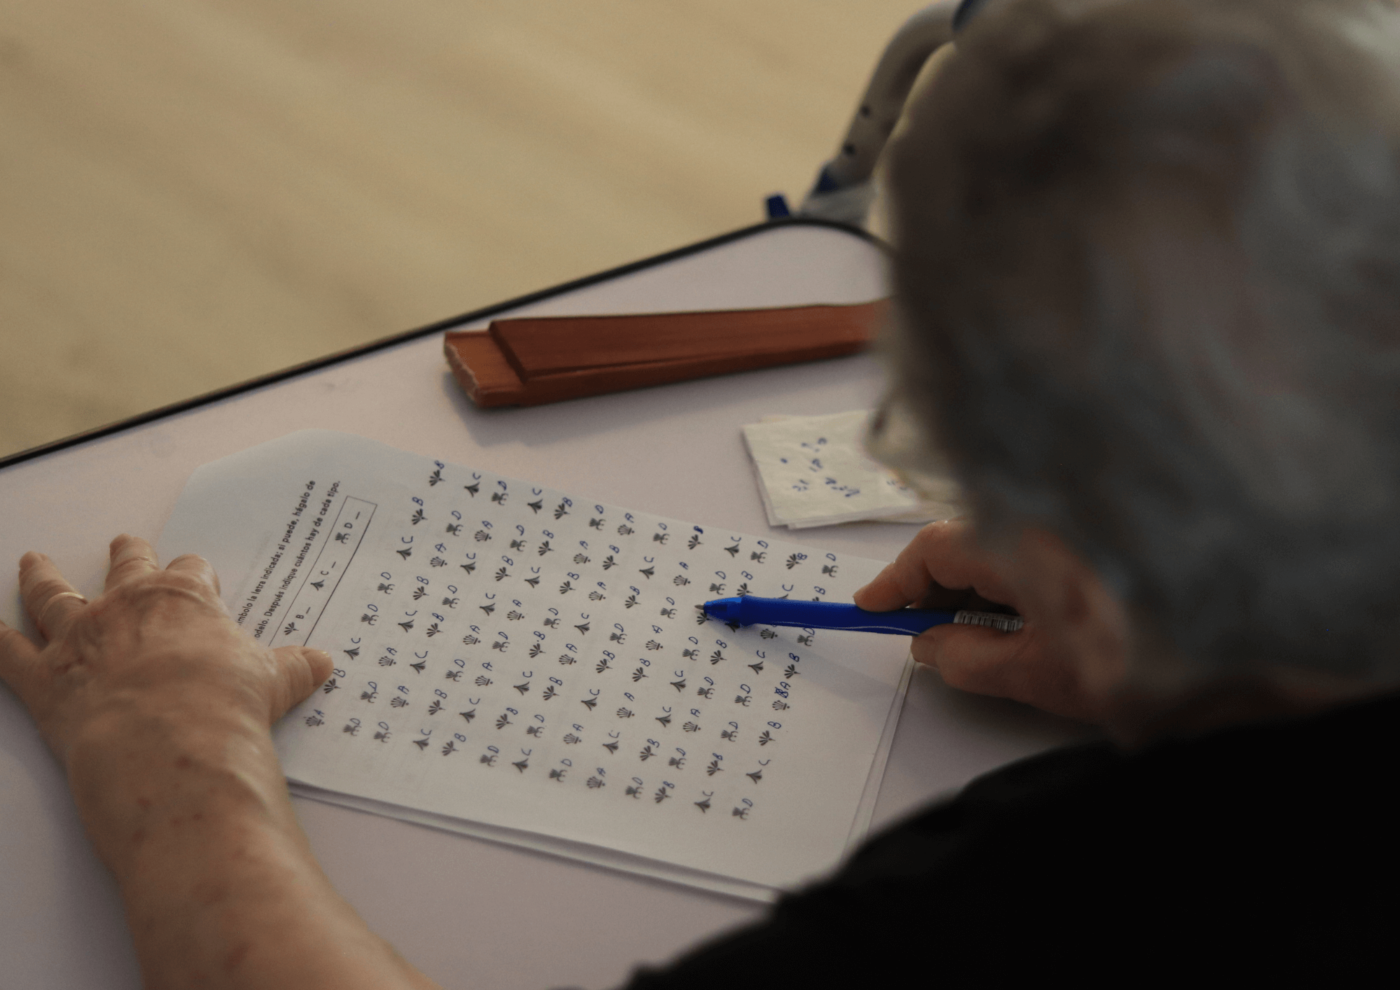 la pérdida de memoria en personas mayores puede ser normal si es transitoria